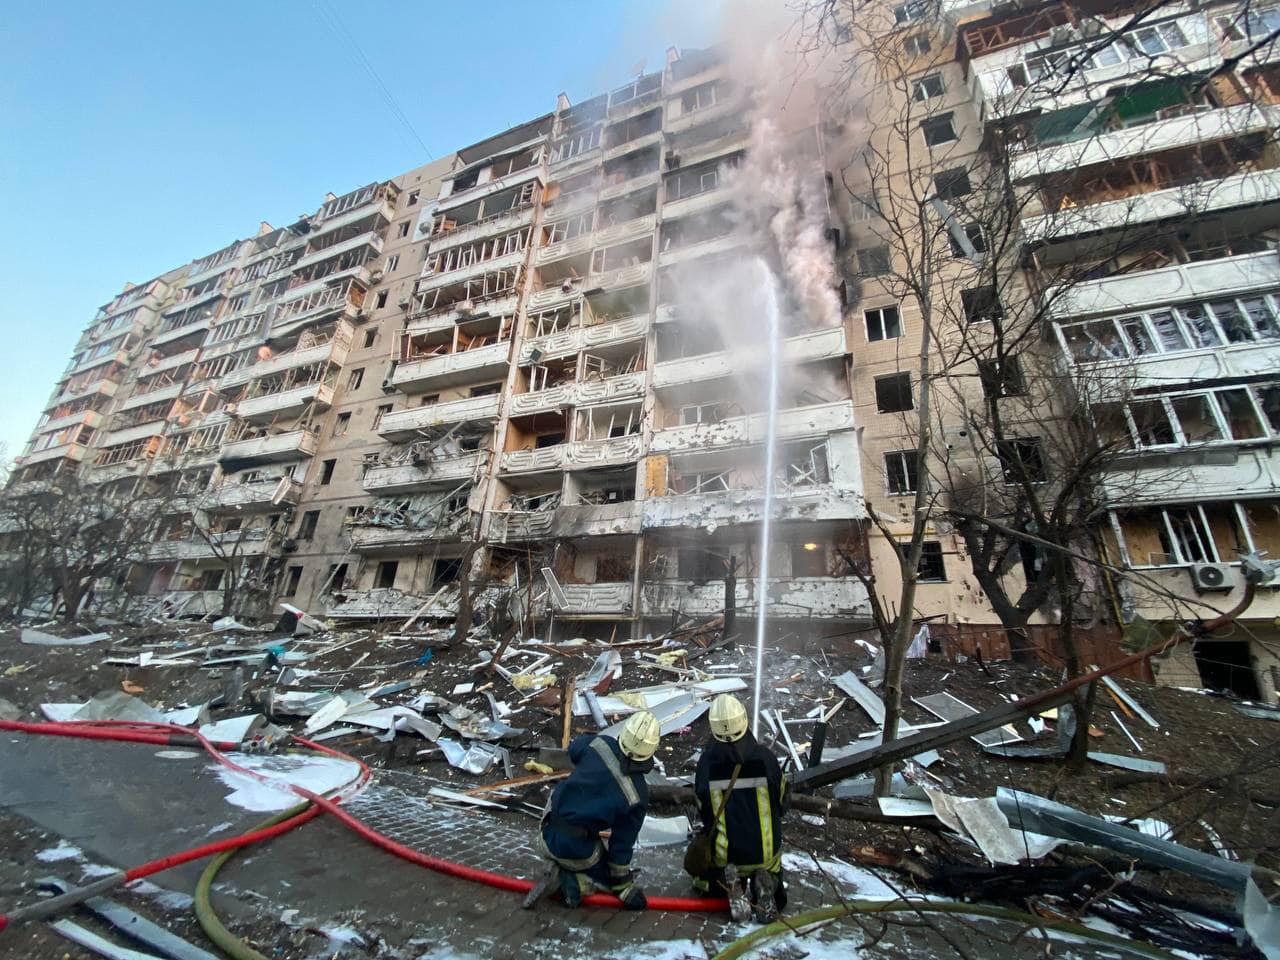 В Подольском районе Киева произошел пожар в 10-этажном здании. Пострадал один человек (фото)